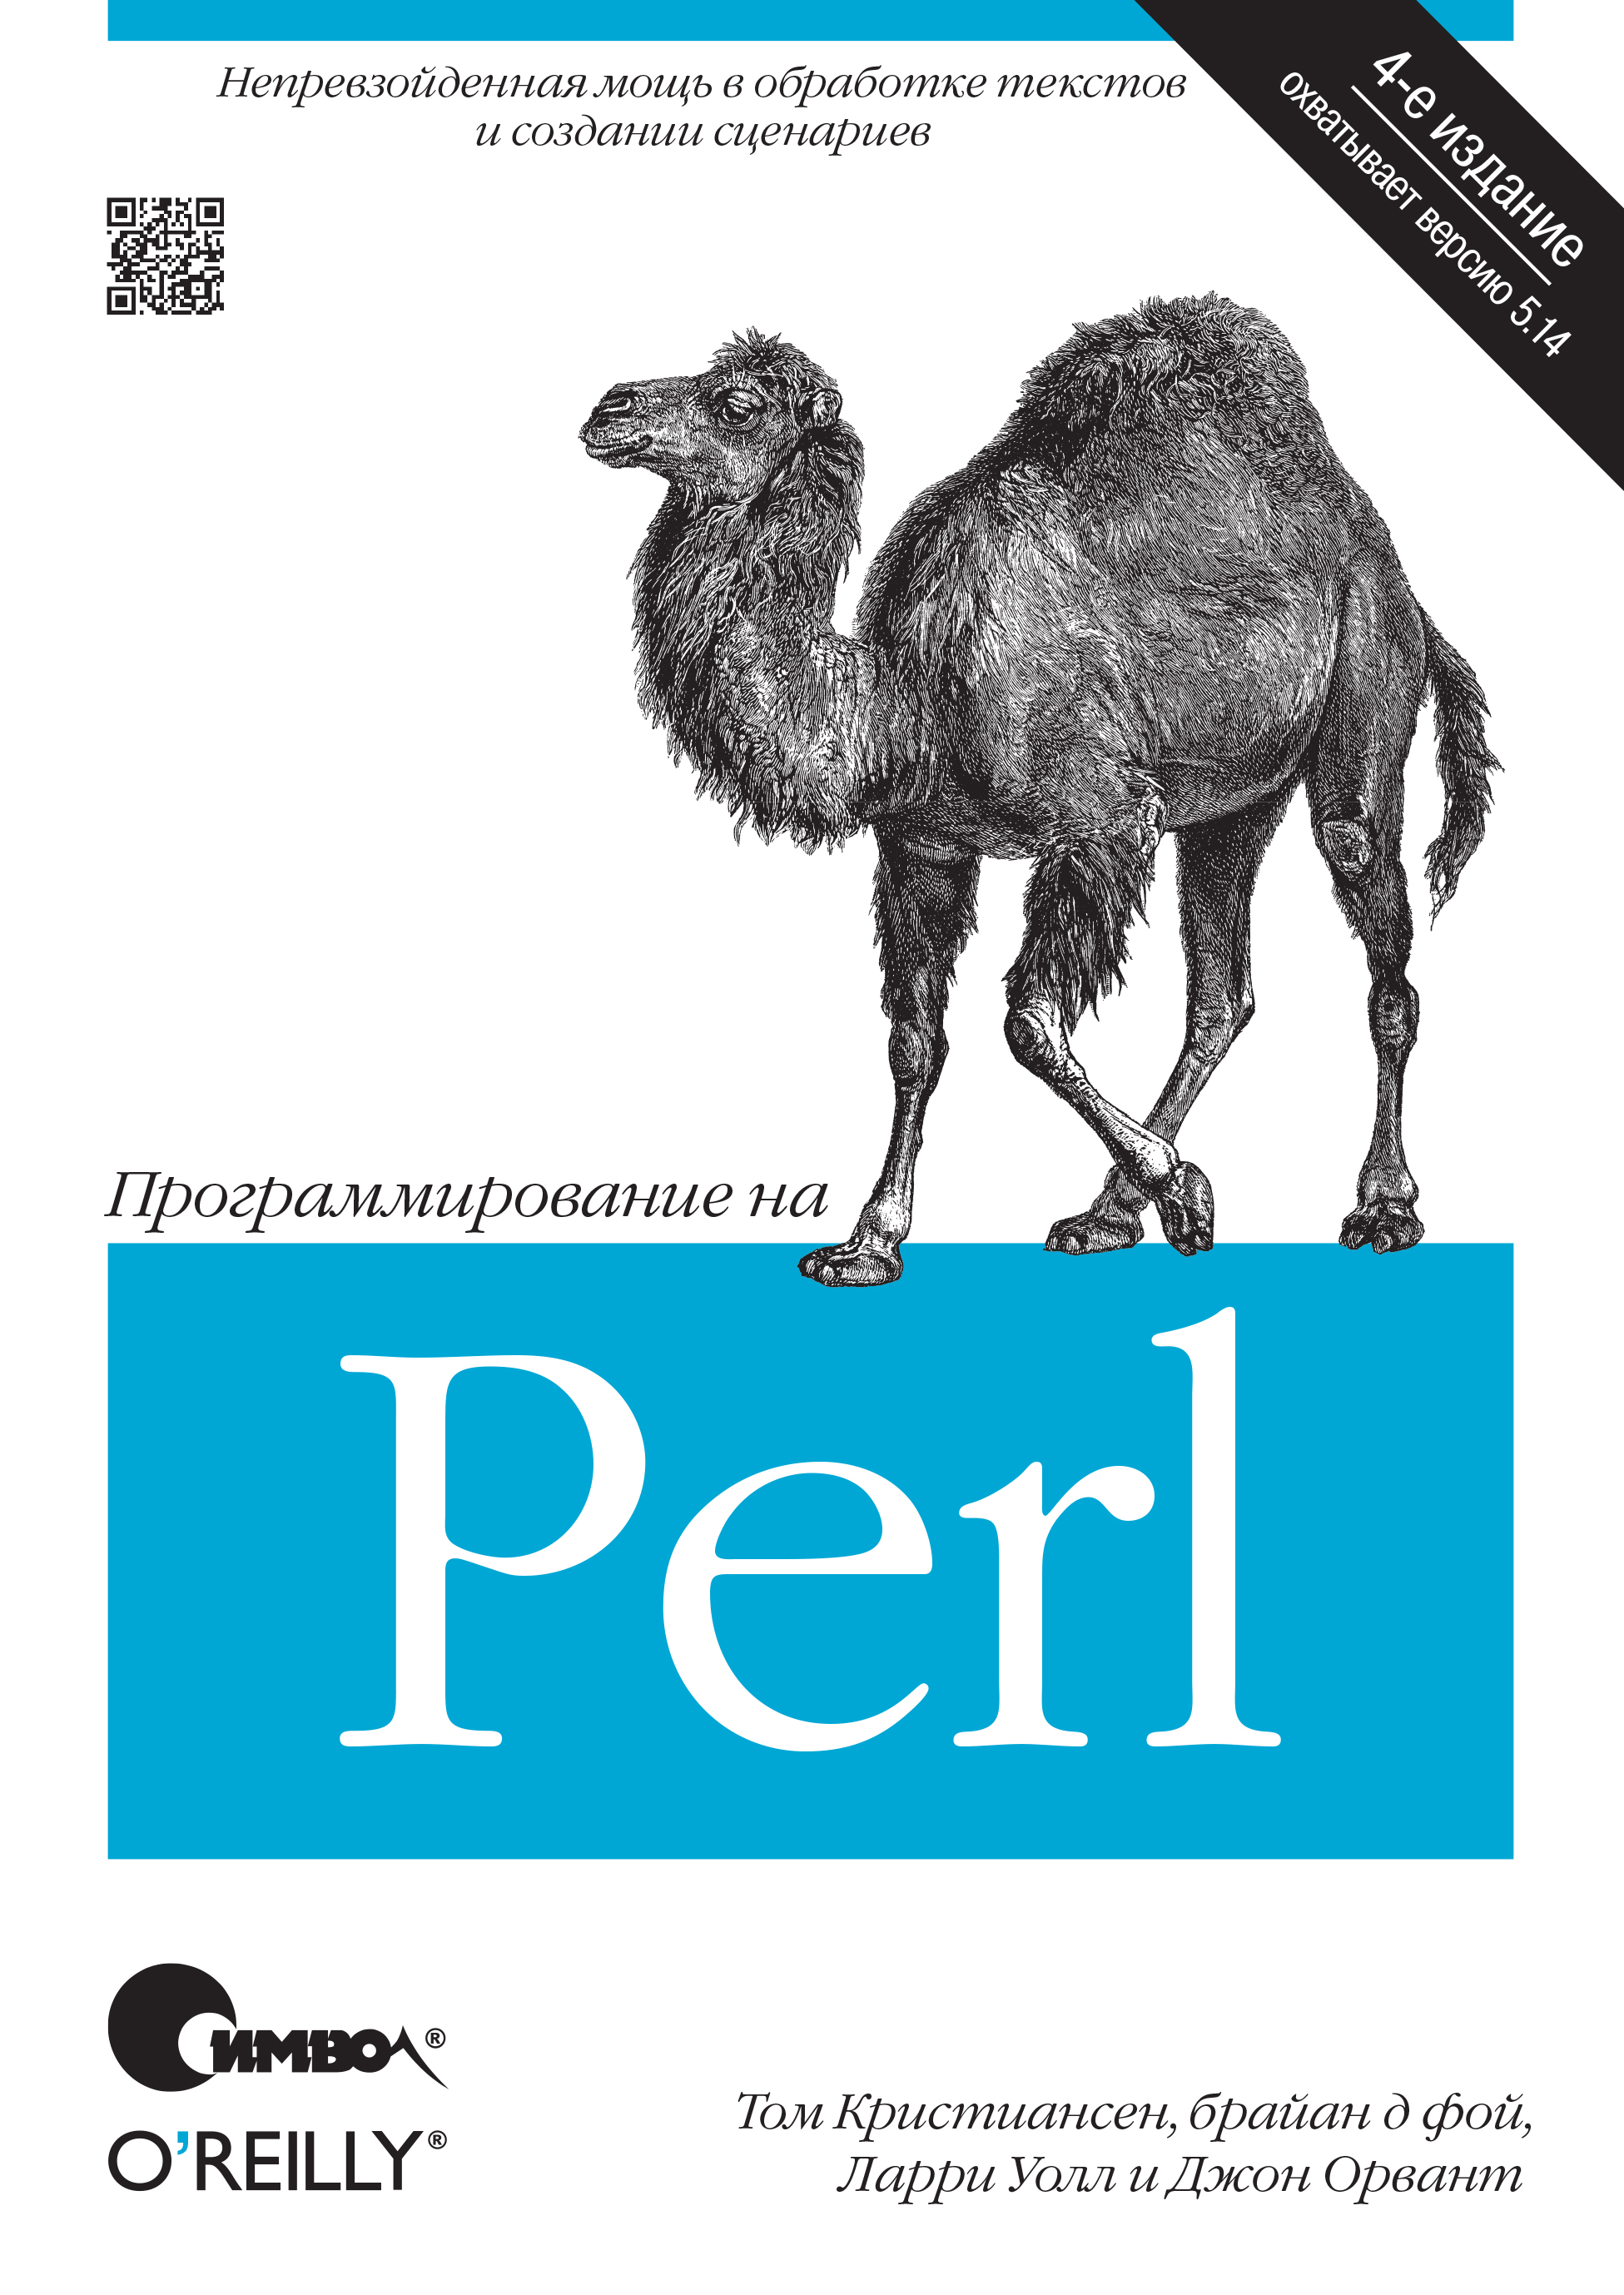 Книга  Программирование на Perl. 4-е издание созданная Брайан Д'Фой, Джон Орвант, Ларри Уолл, Том Кристиансен, Александр Киселев может относится к жанру зарубежная компьютерная литература, книги о компьютерах, компьютерная справочная литература, программирование, программы. Стоимость электронной книги Программирование на Perl. 4-е издание с идентификатором 24500118 составляет 590.00 руб.